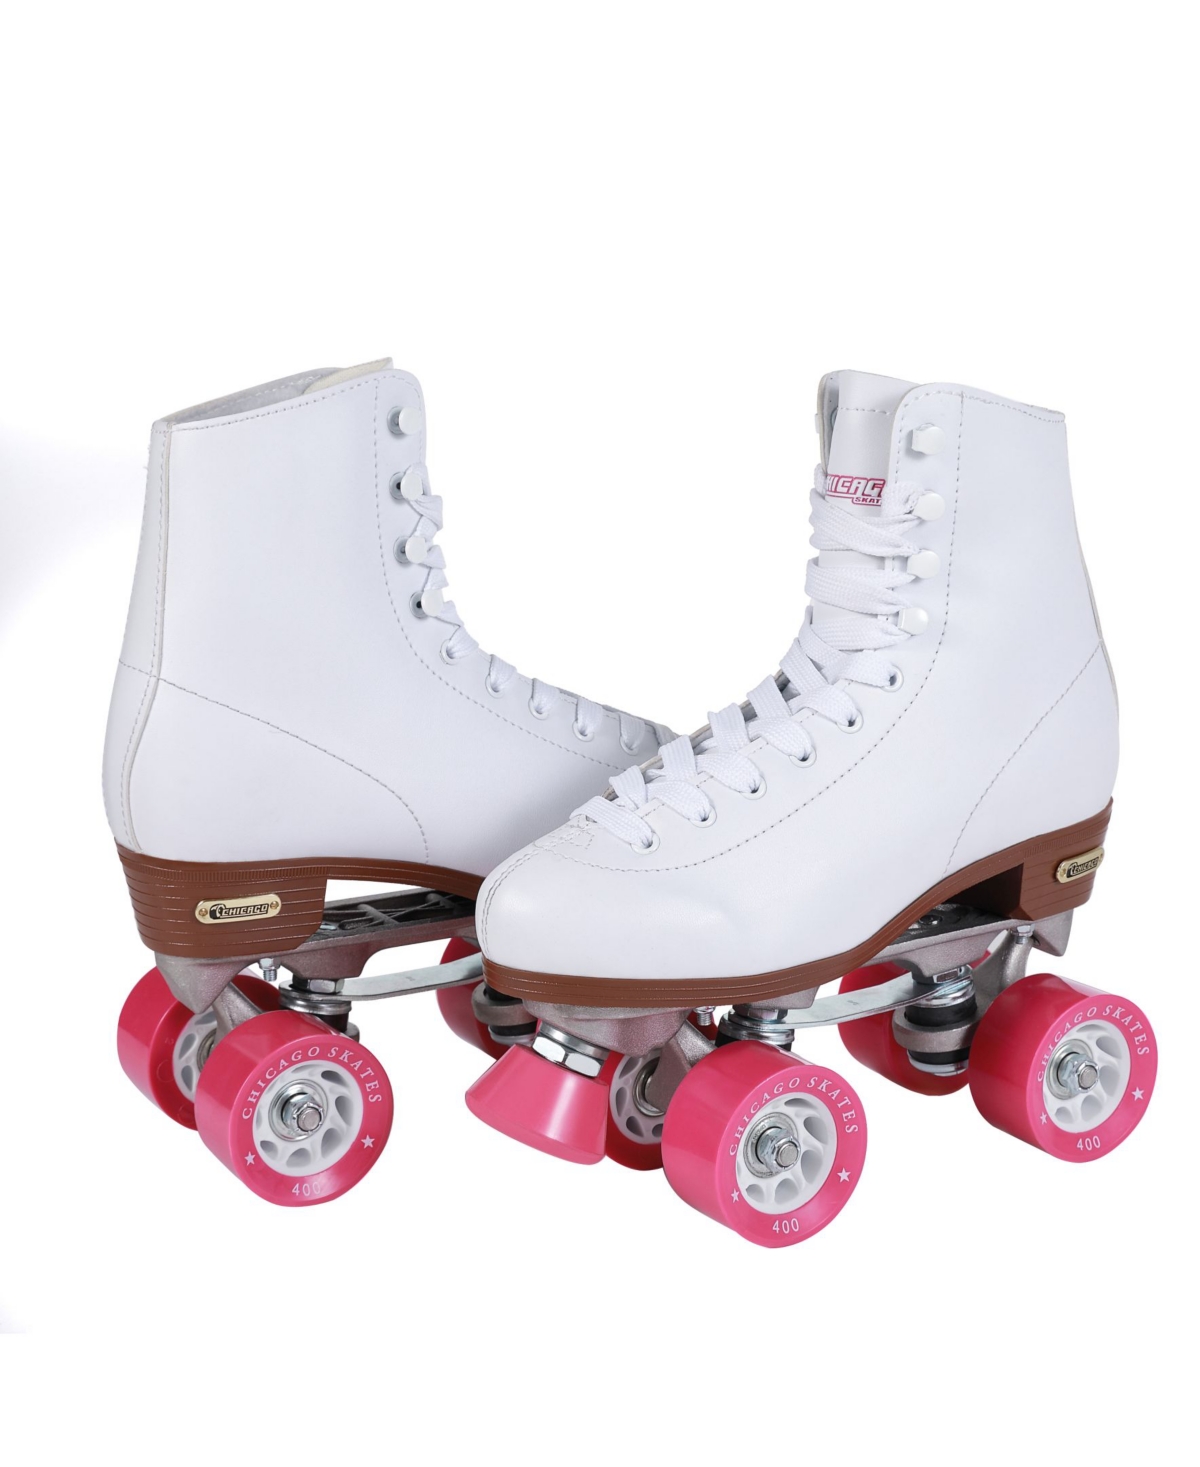 Women's Rink Roller Skates - Size 3 - White